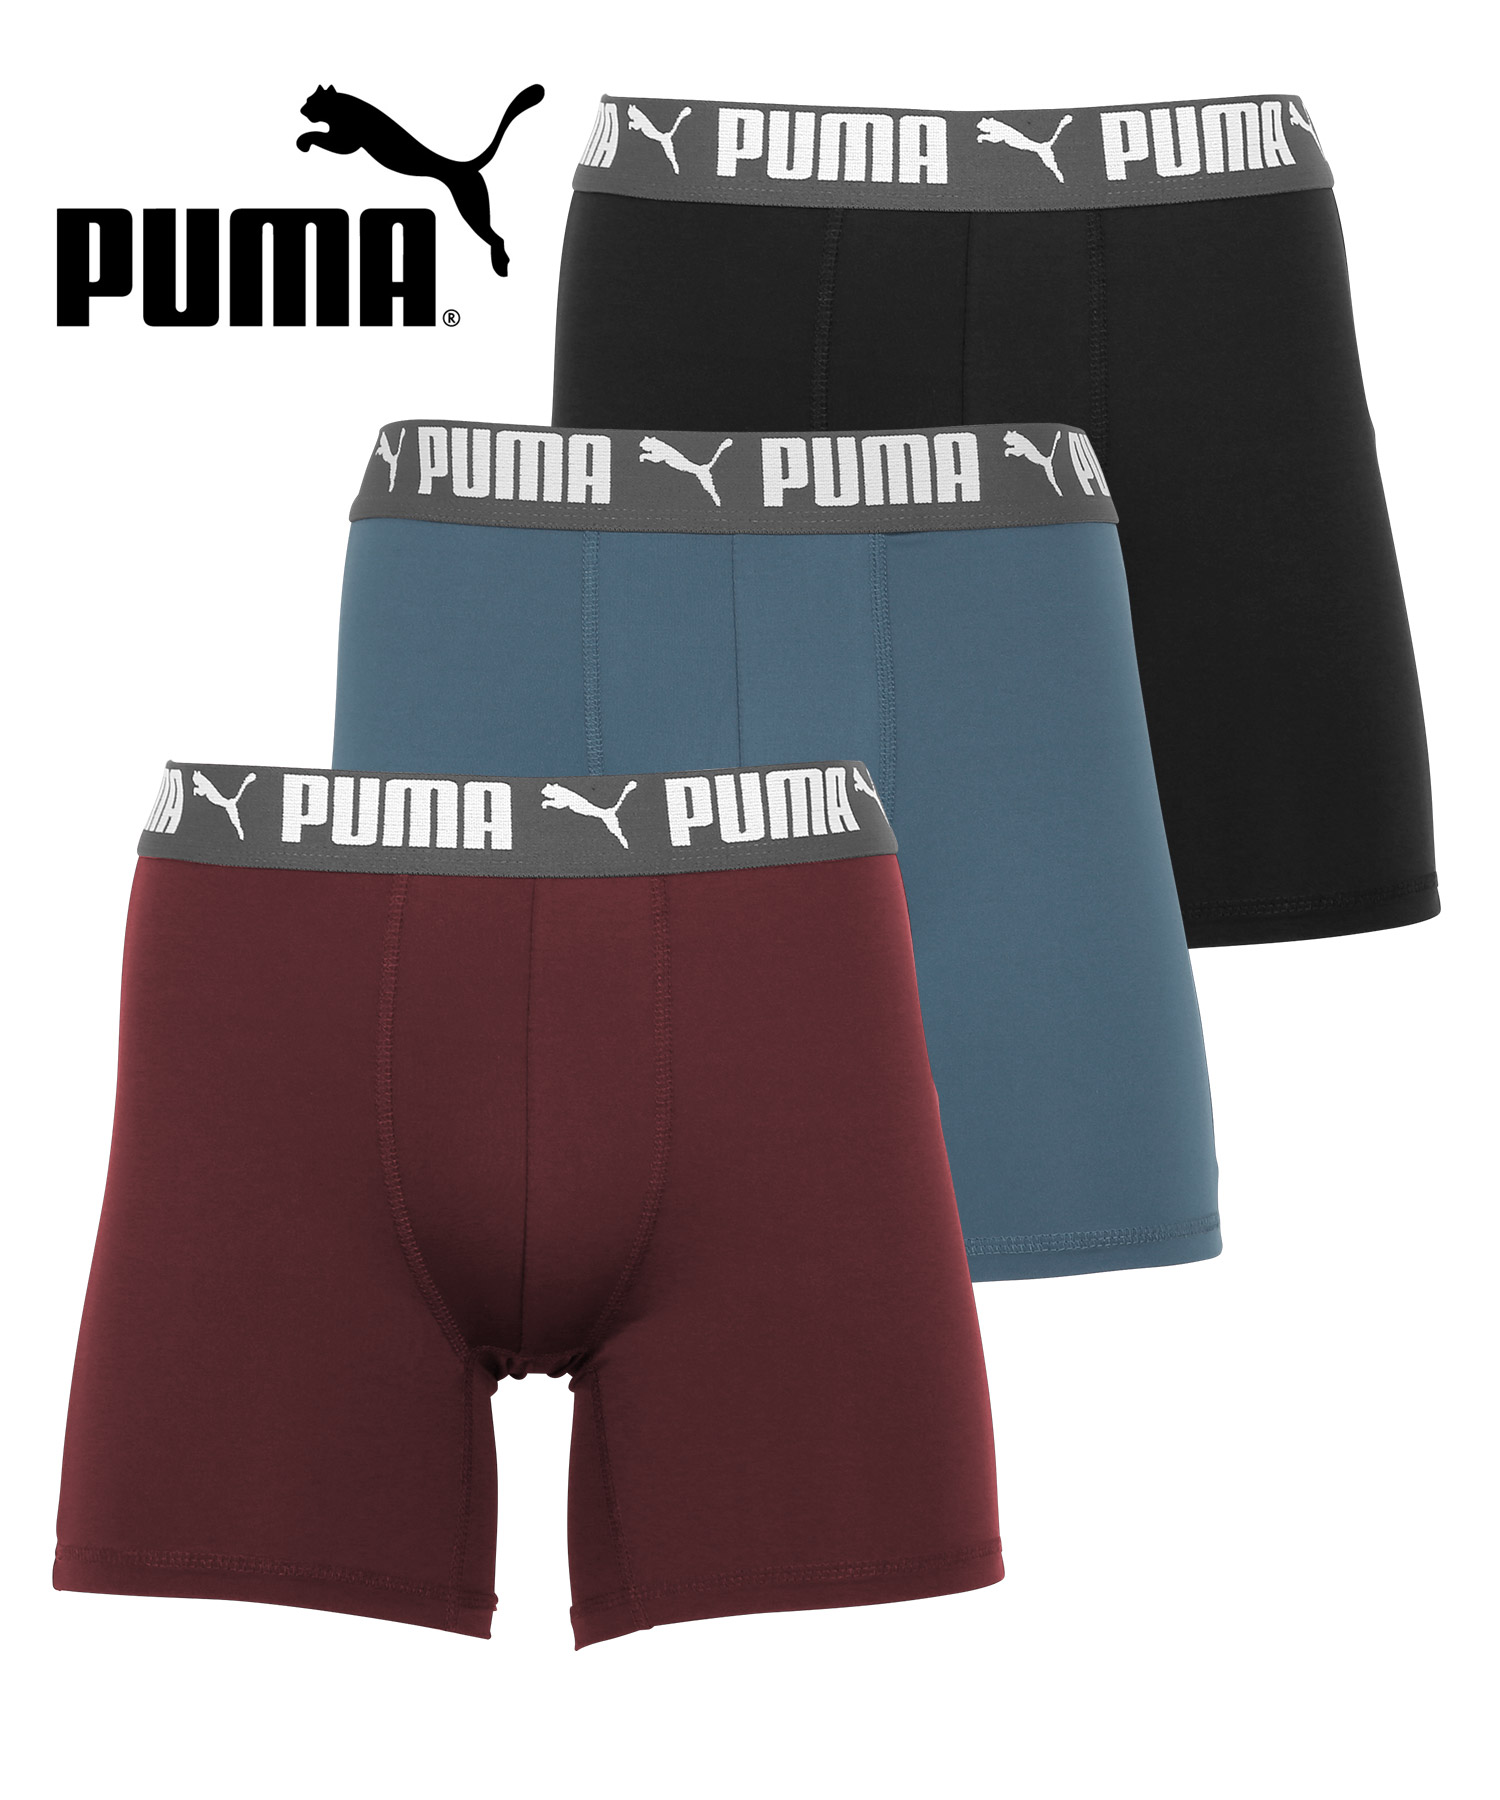 プーマ PUMA 3枚セット ボクサーパンツ メンズ 下着 アンダーウェア ツルツル 速乾 トレーニ...